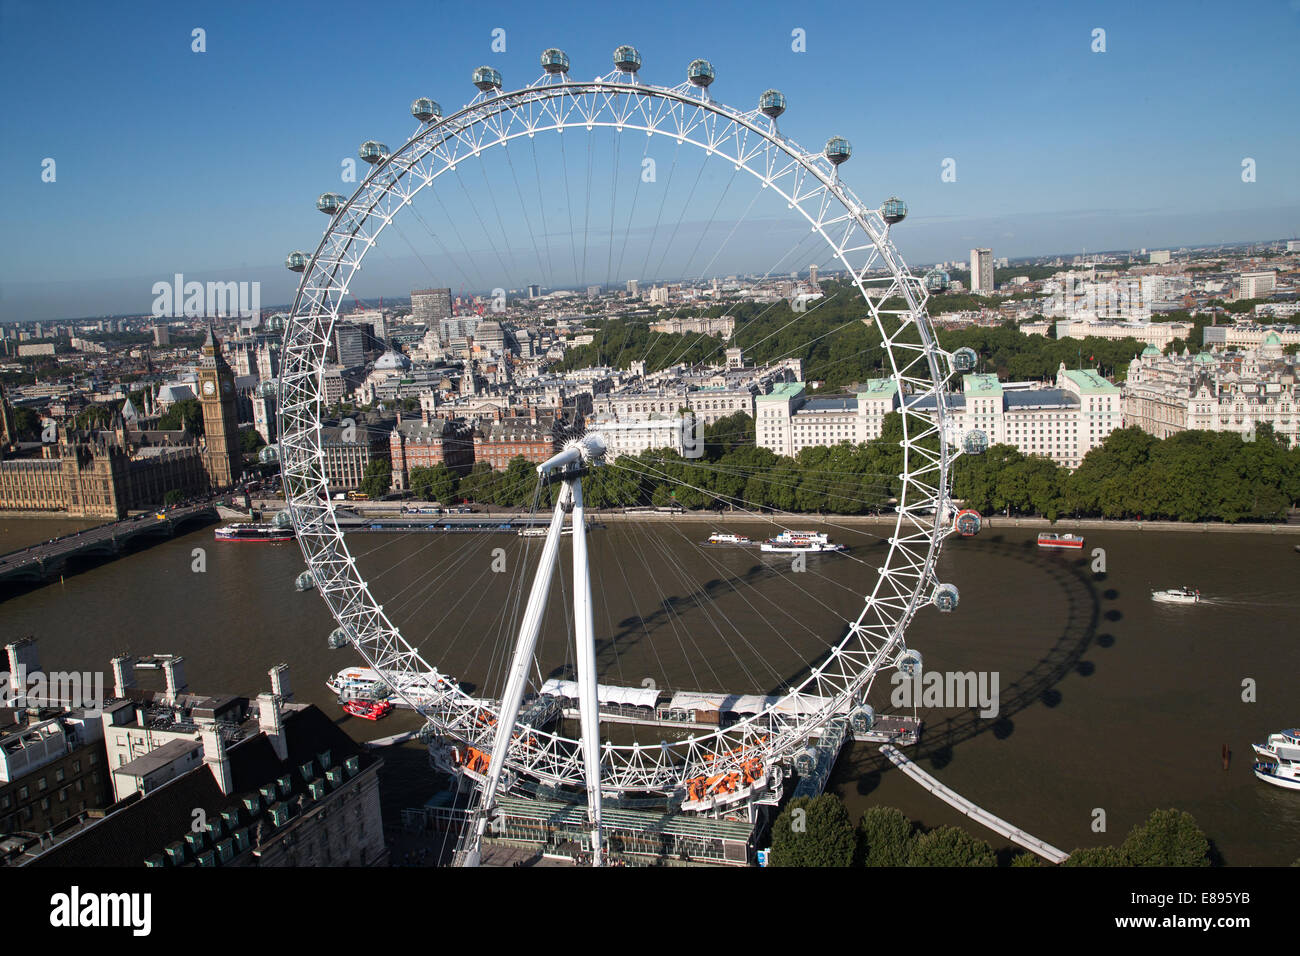 Il Millennio ruota Wheel-Ferris completato nel febbraio 2000-135 metri con 32 capsule con le case del Parlamento Foto Stock